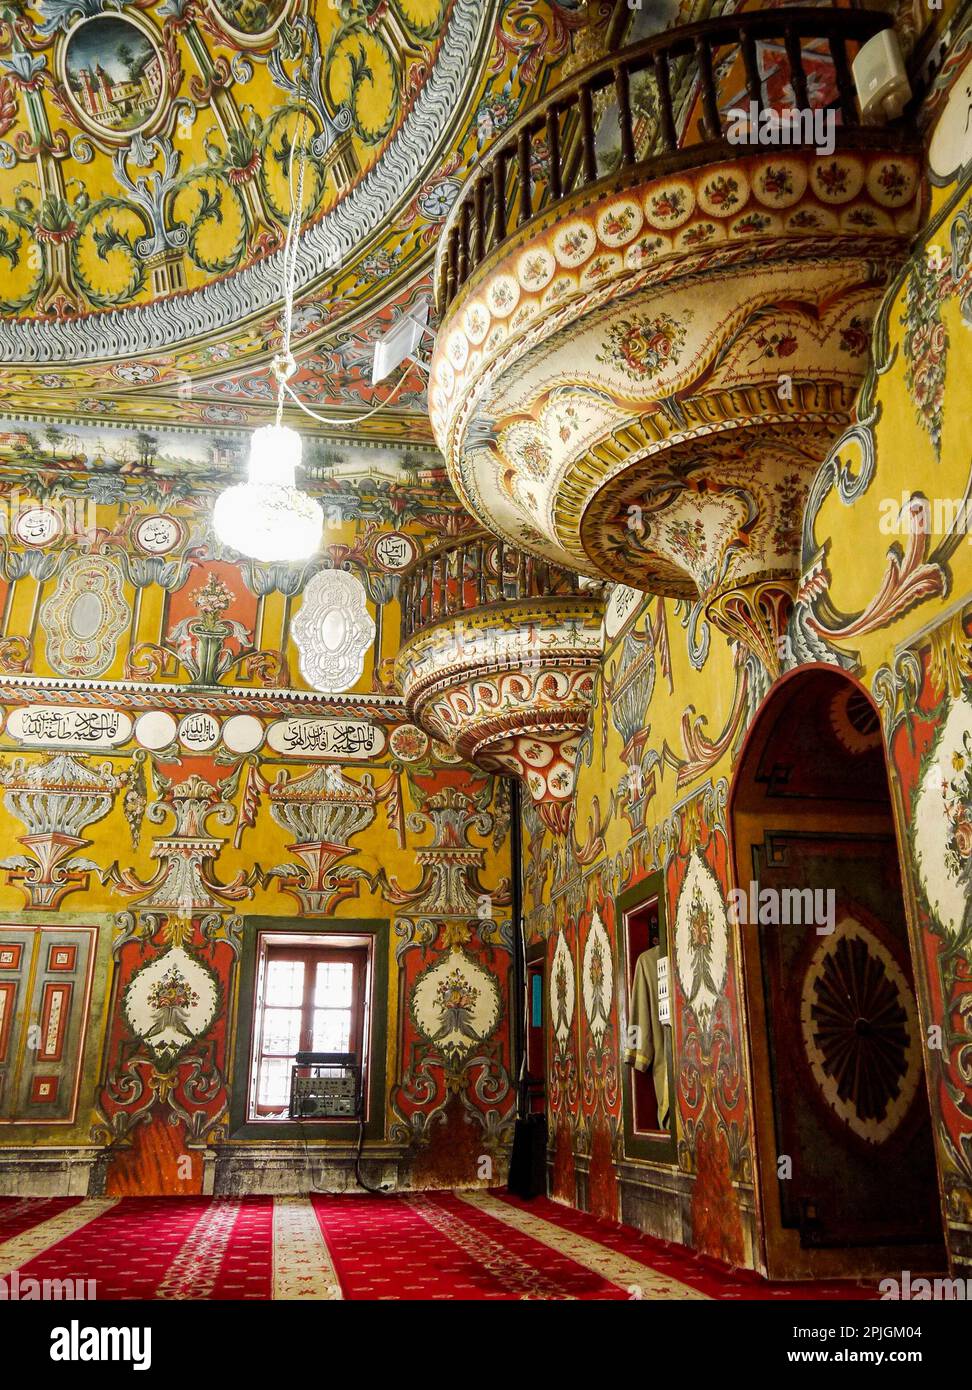 Motivi floreali dipinti dell'interno della moschea di Šarena Džamija, Tetovo, Macedonia settentrionale Foto Stock